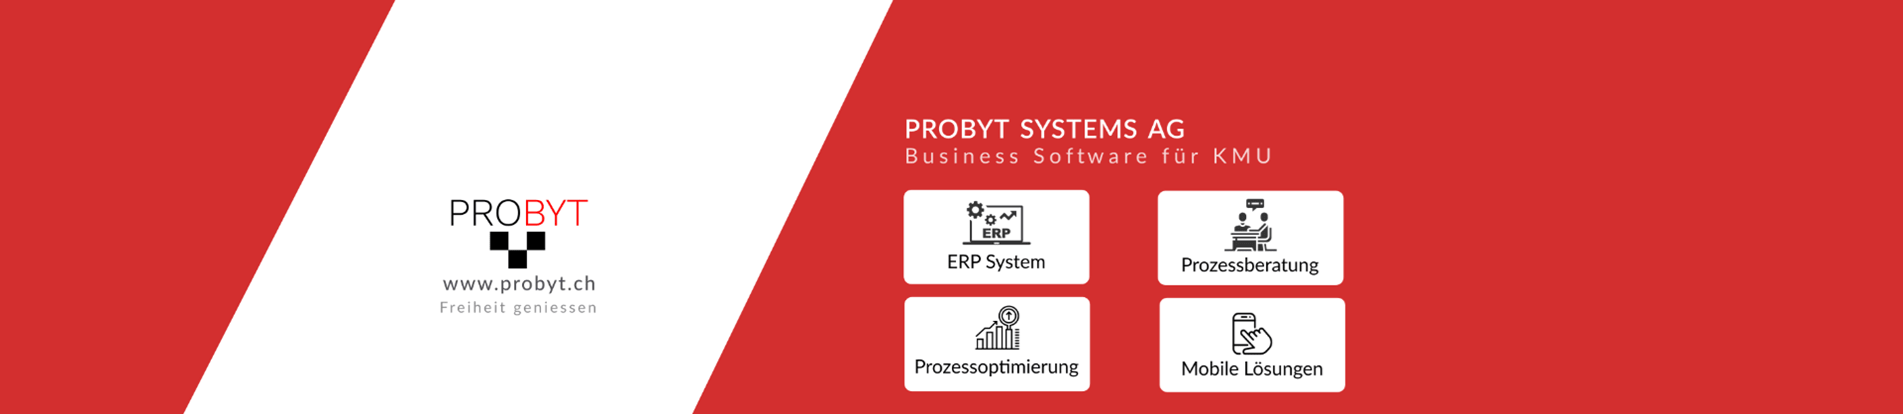 Probyt Systems AG logo